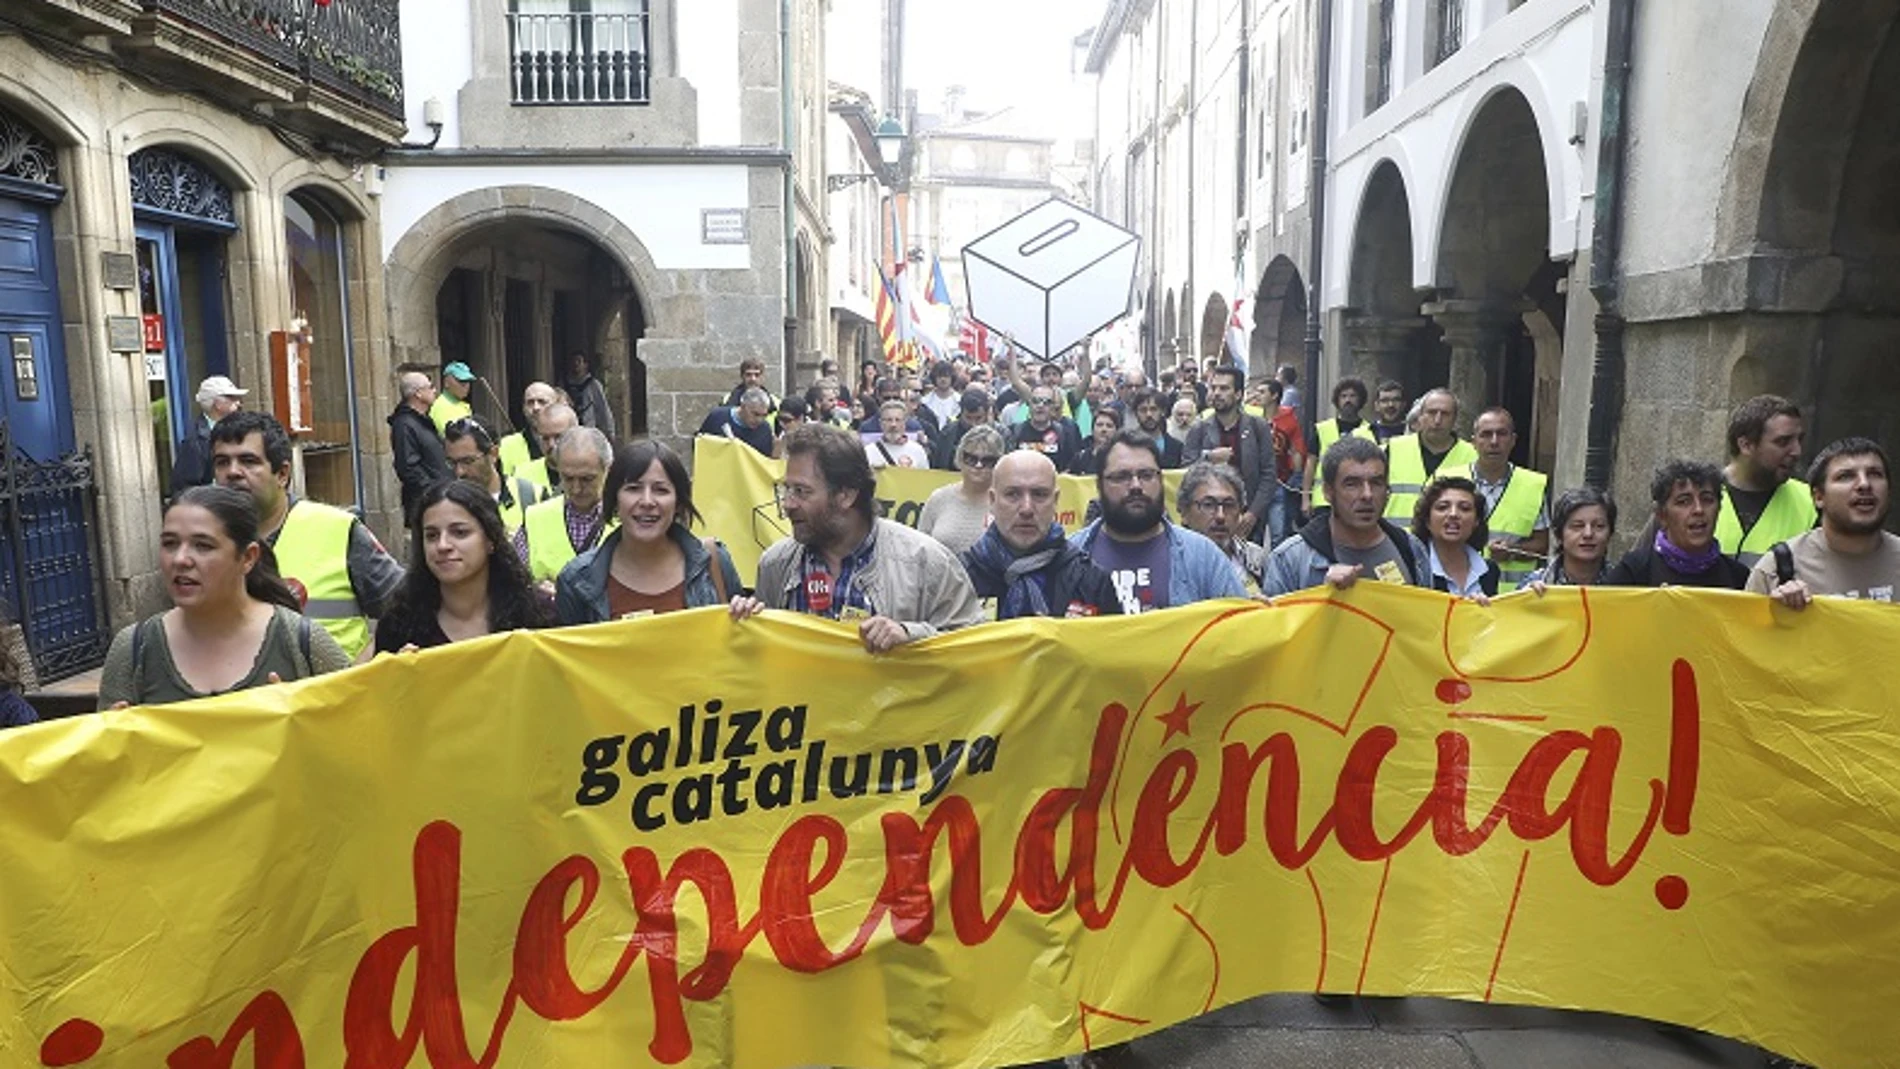 Participantes en Santiago de Compostela de la manifestación organizada por la plataforma "Galiza con Catalunya", formada por organizaciones políticas, sociales, sindicales y culturales gallegas